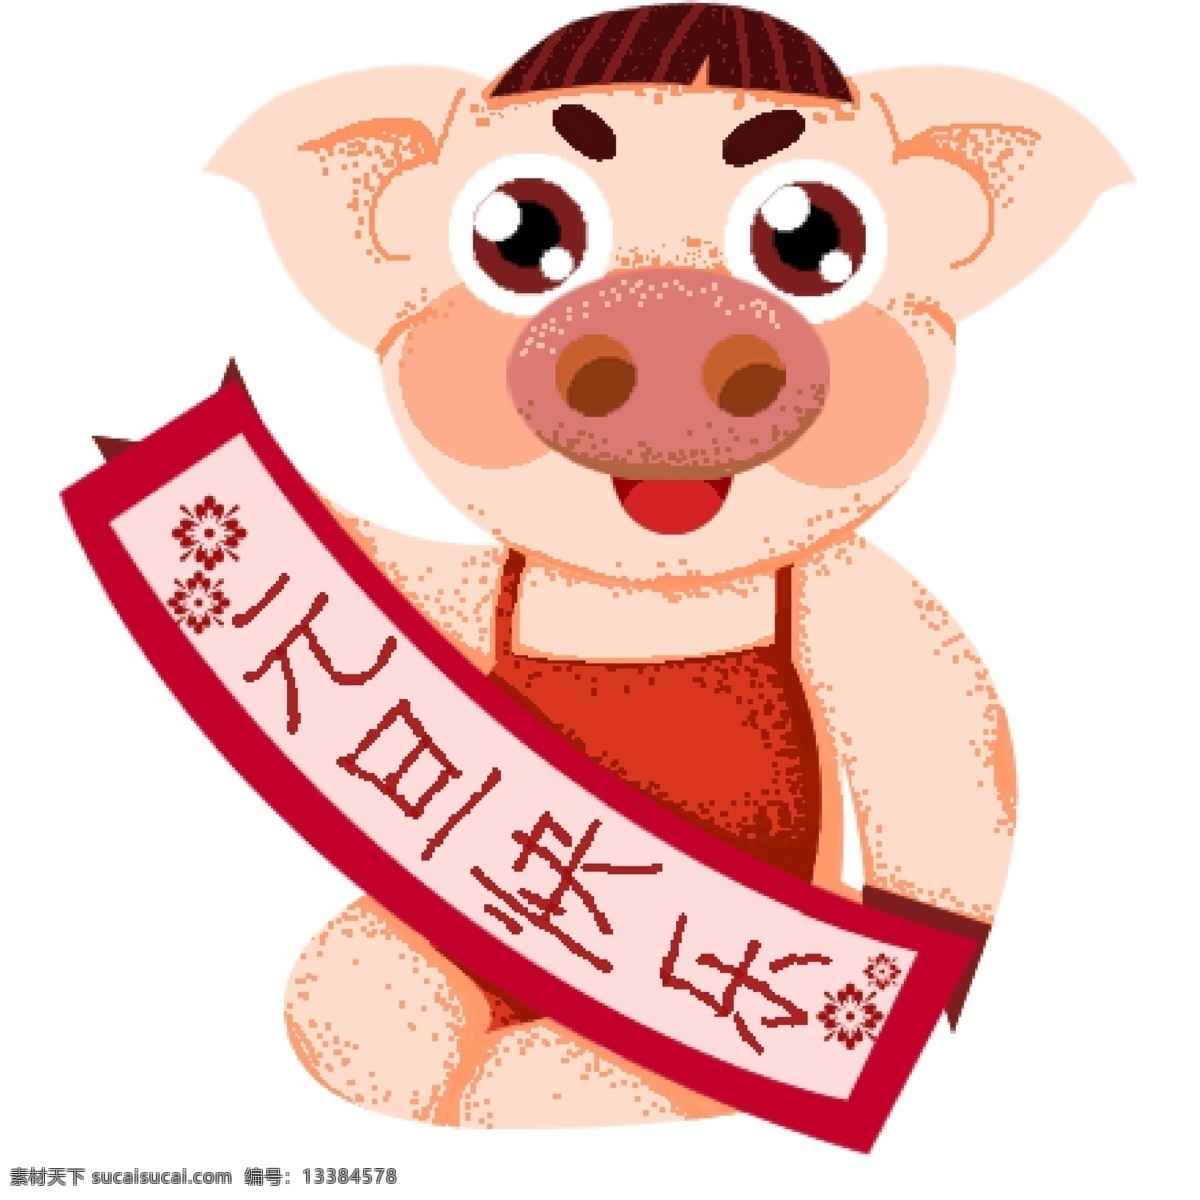 元旦 快乐 喜庆 中国 风 猪 卡通 复古 中国风 横幅 元旦快乐 手绘 小猪 猪年形象 小猪形象 插画元素